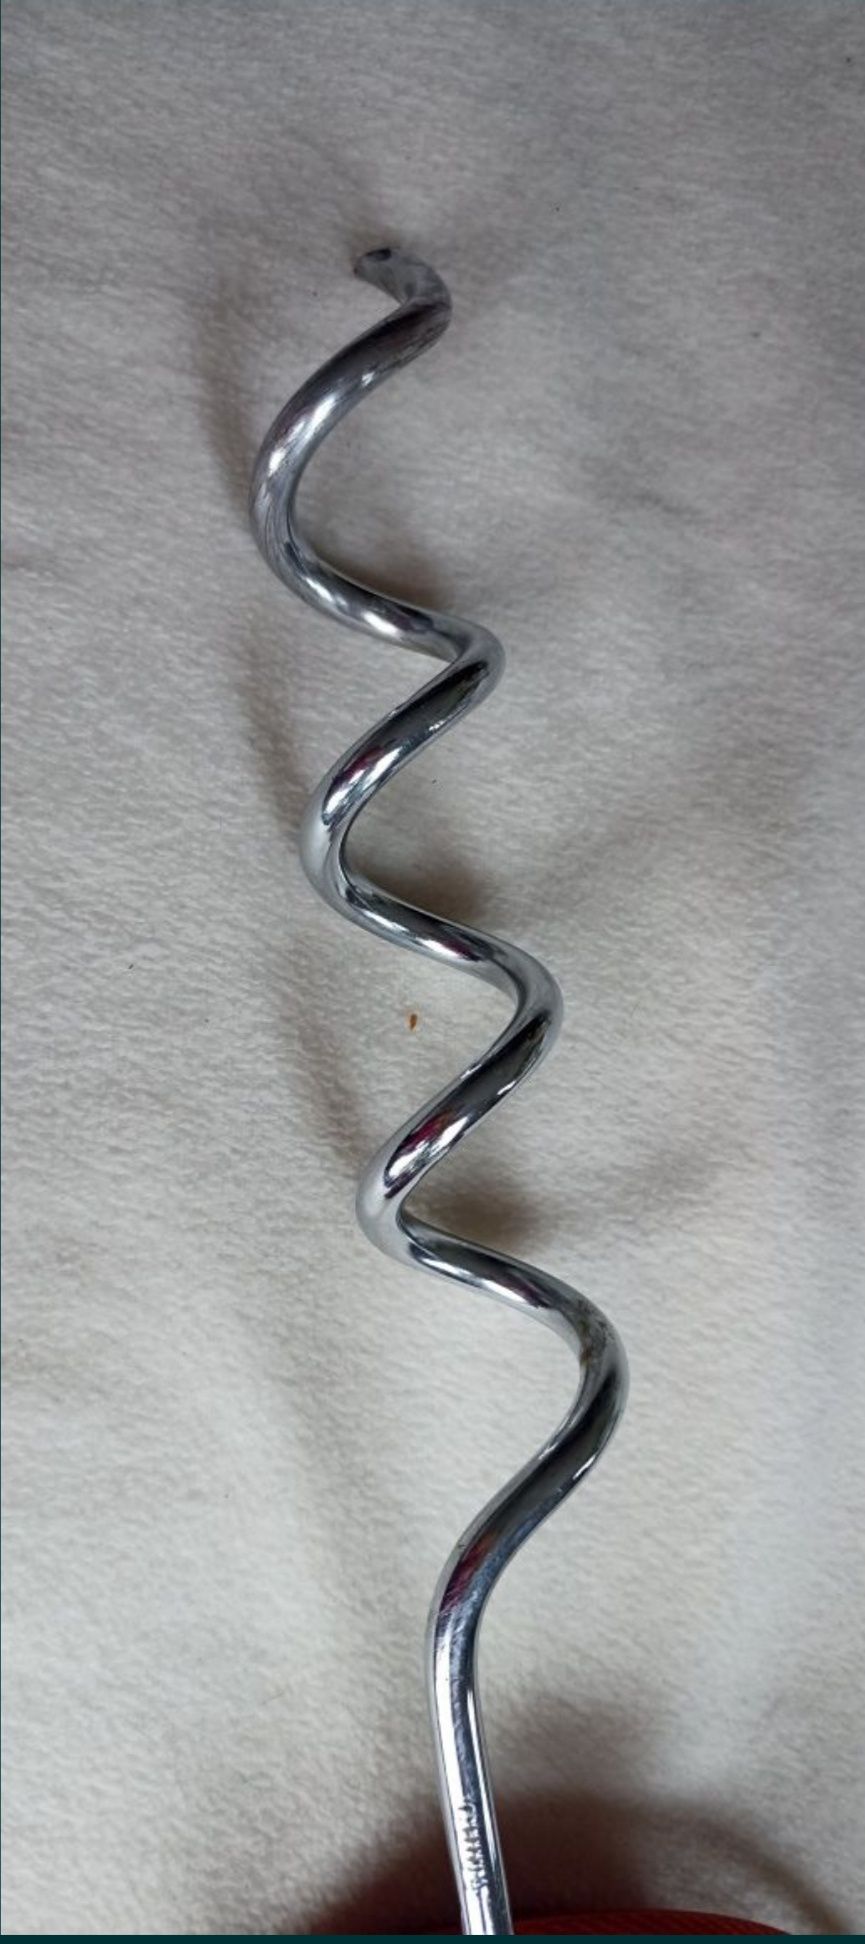 Linka stalowa 4m 50 cm zakończona wkręcaną kotwą